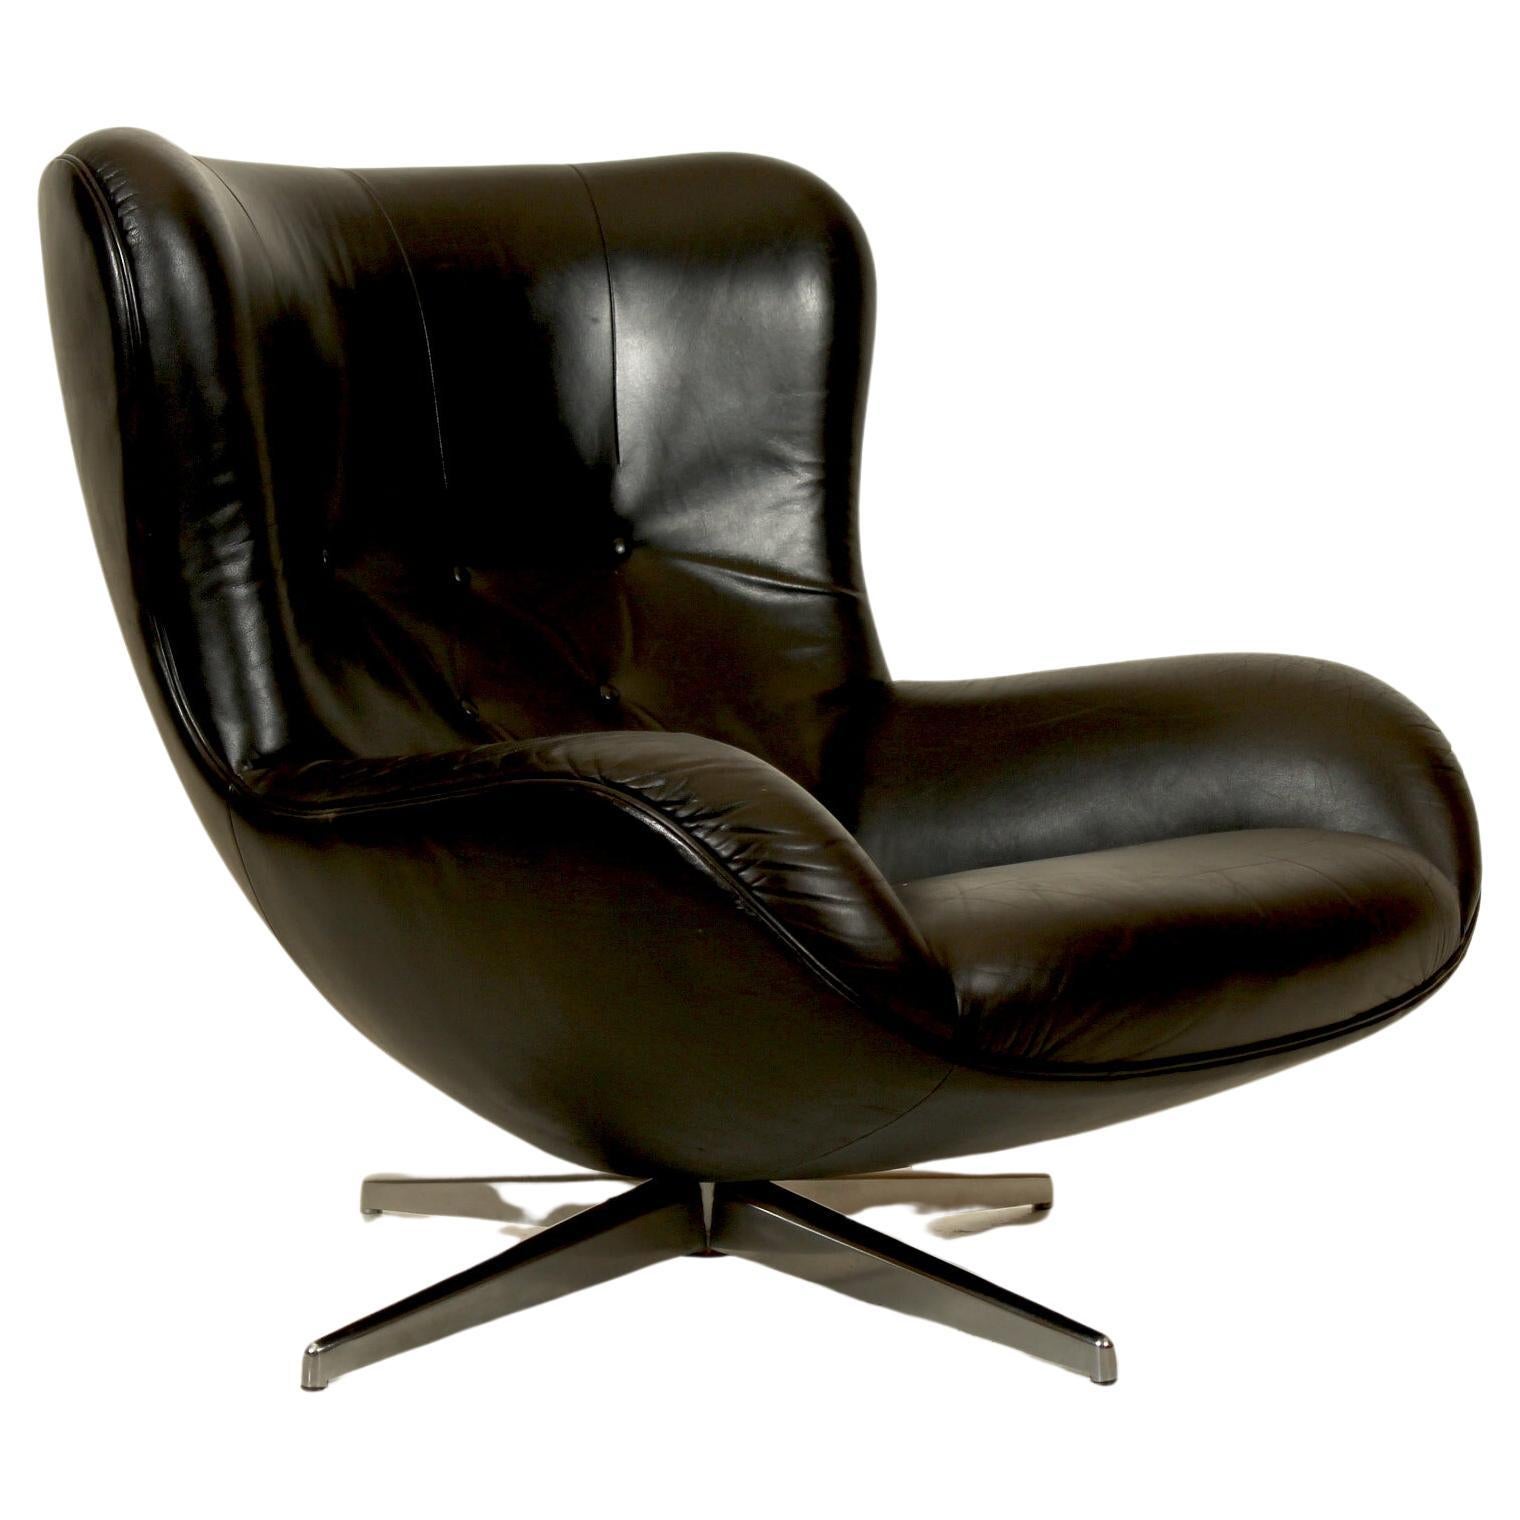 Danish modern, Illum Wikkelsø for Mikael Laursen Swivel 'ML214' Lounge Chair